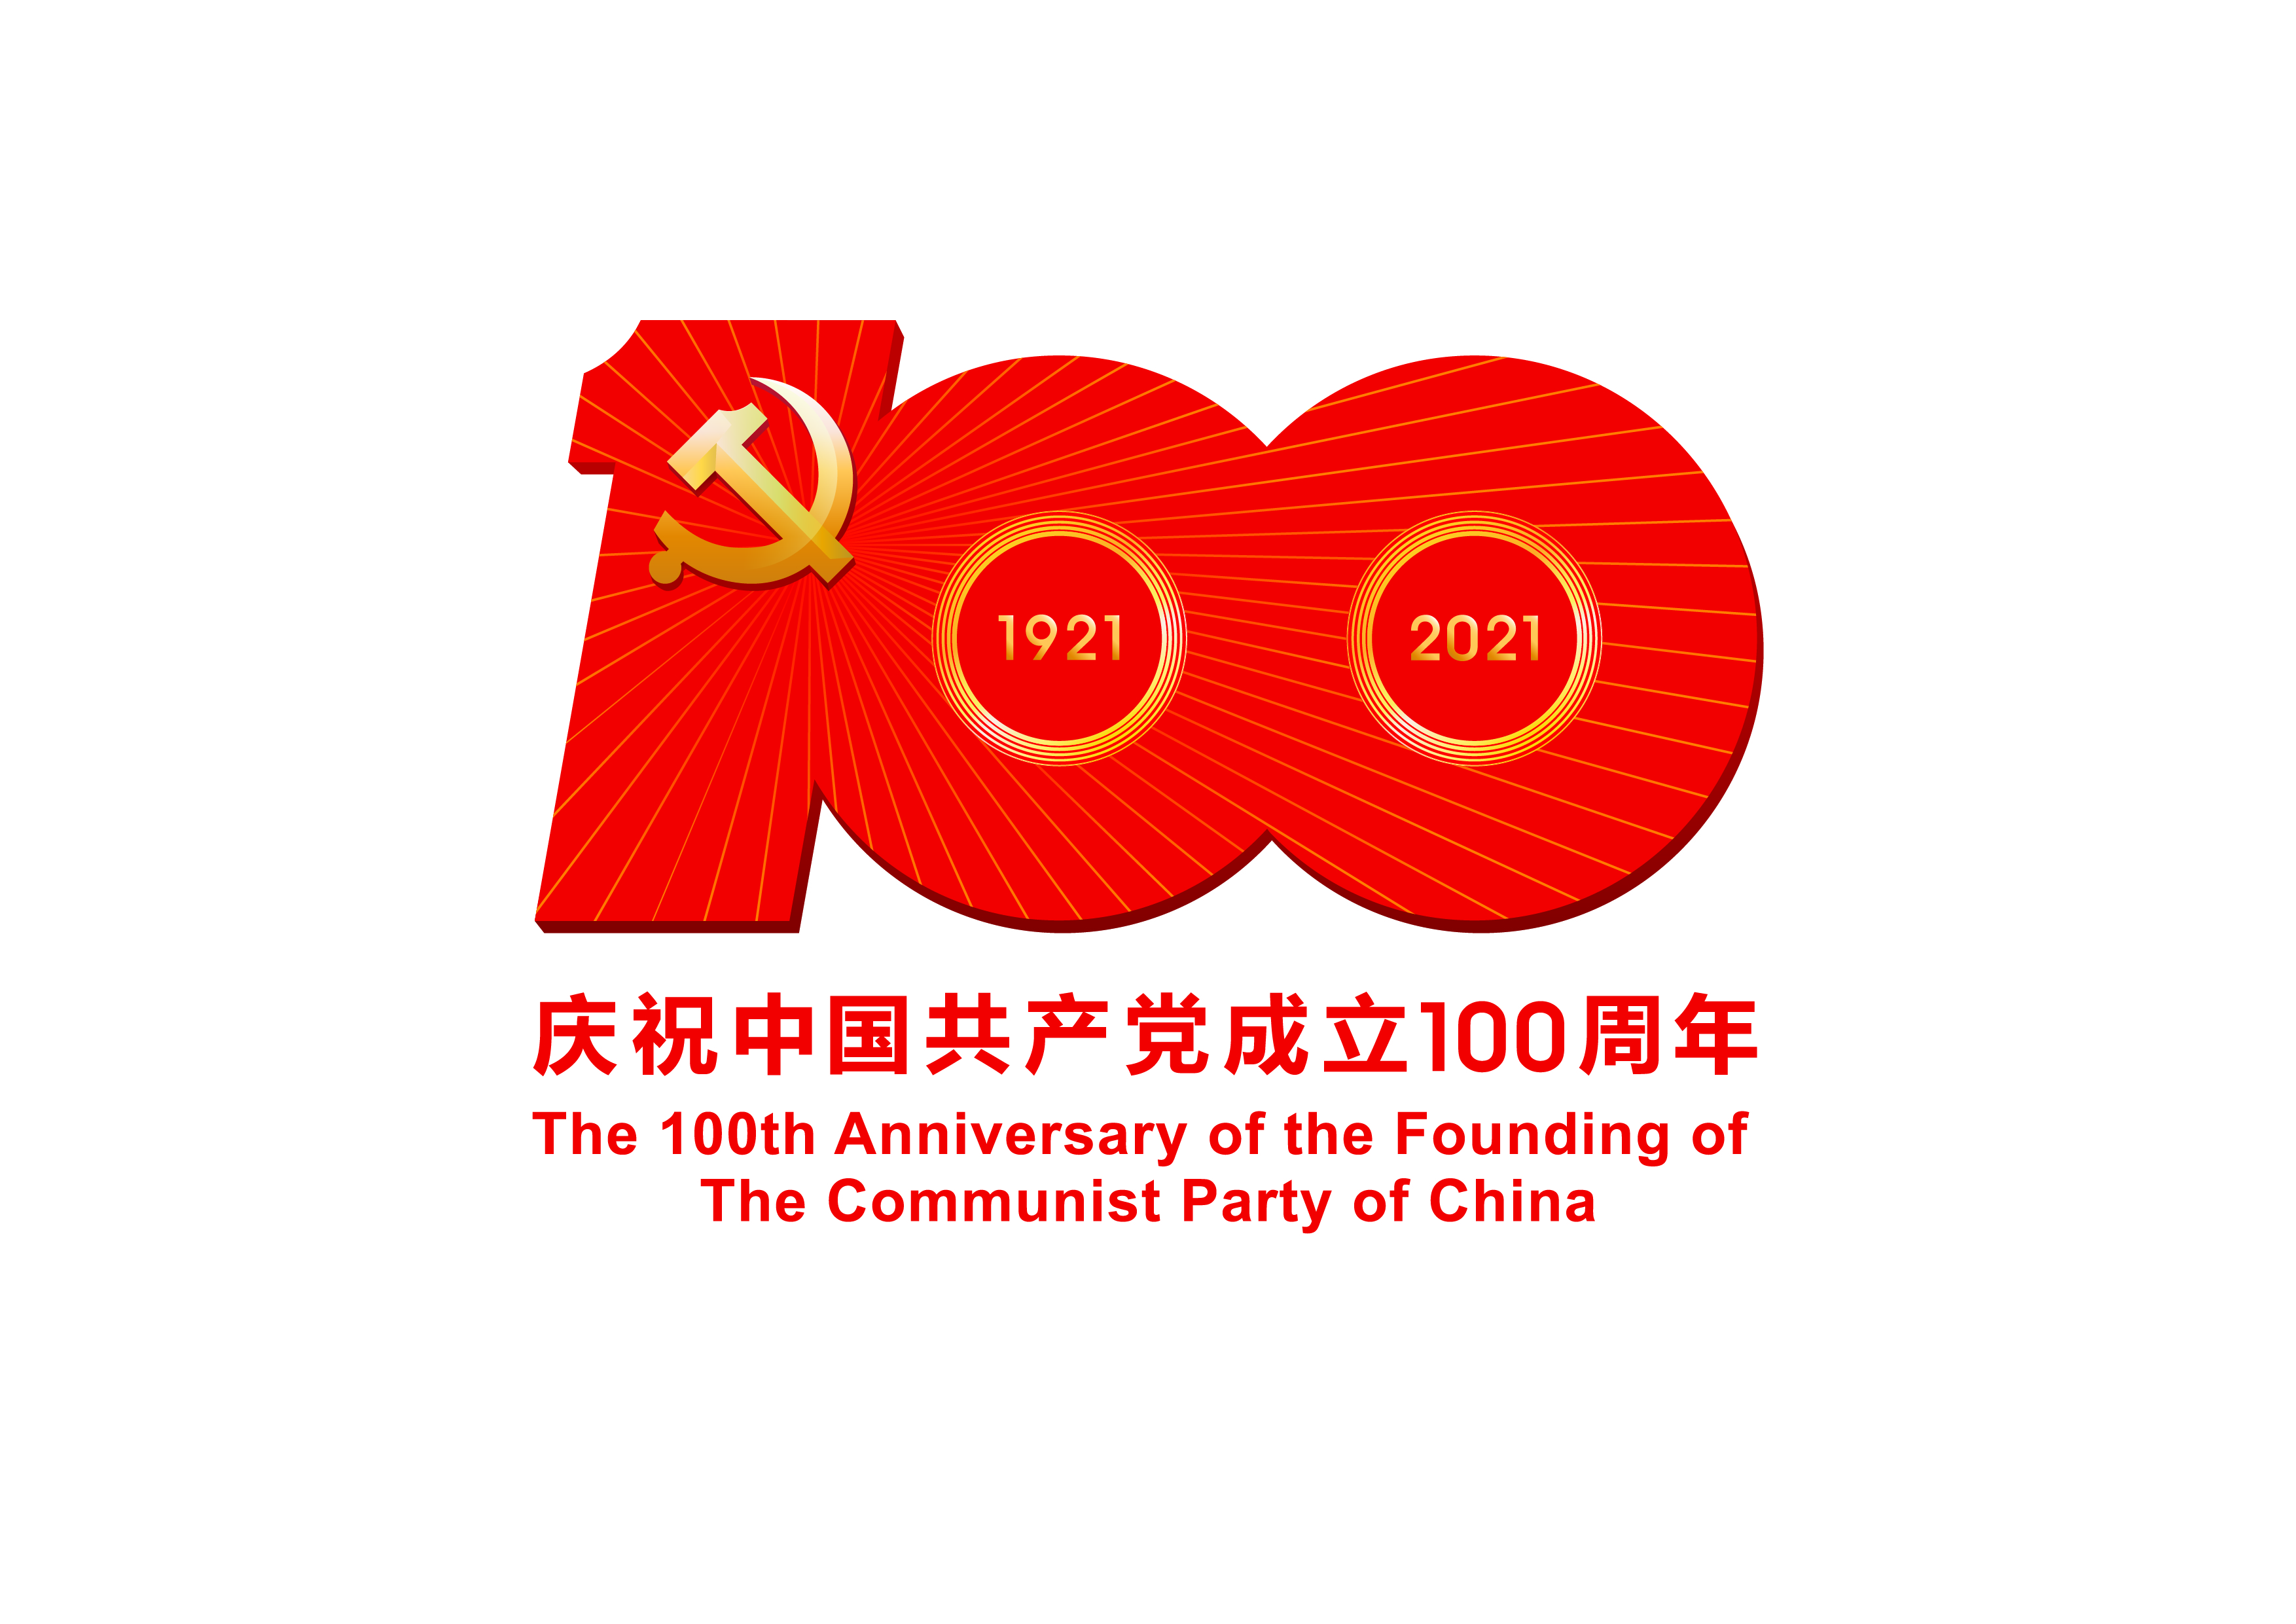 中国共产*成立100周年庆祝活动标识-JPEG格式.jpg